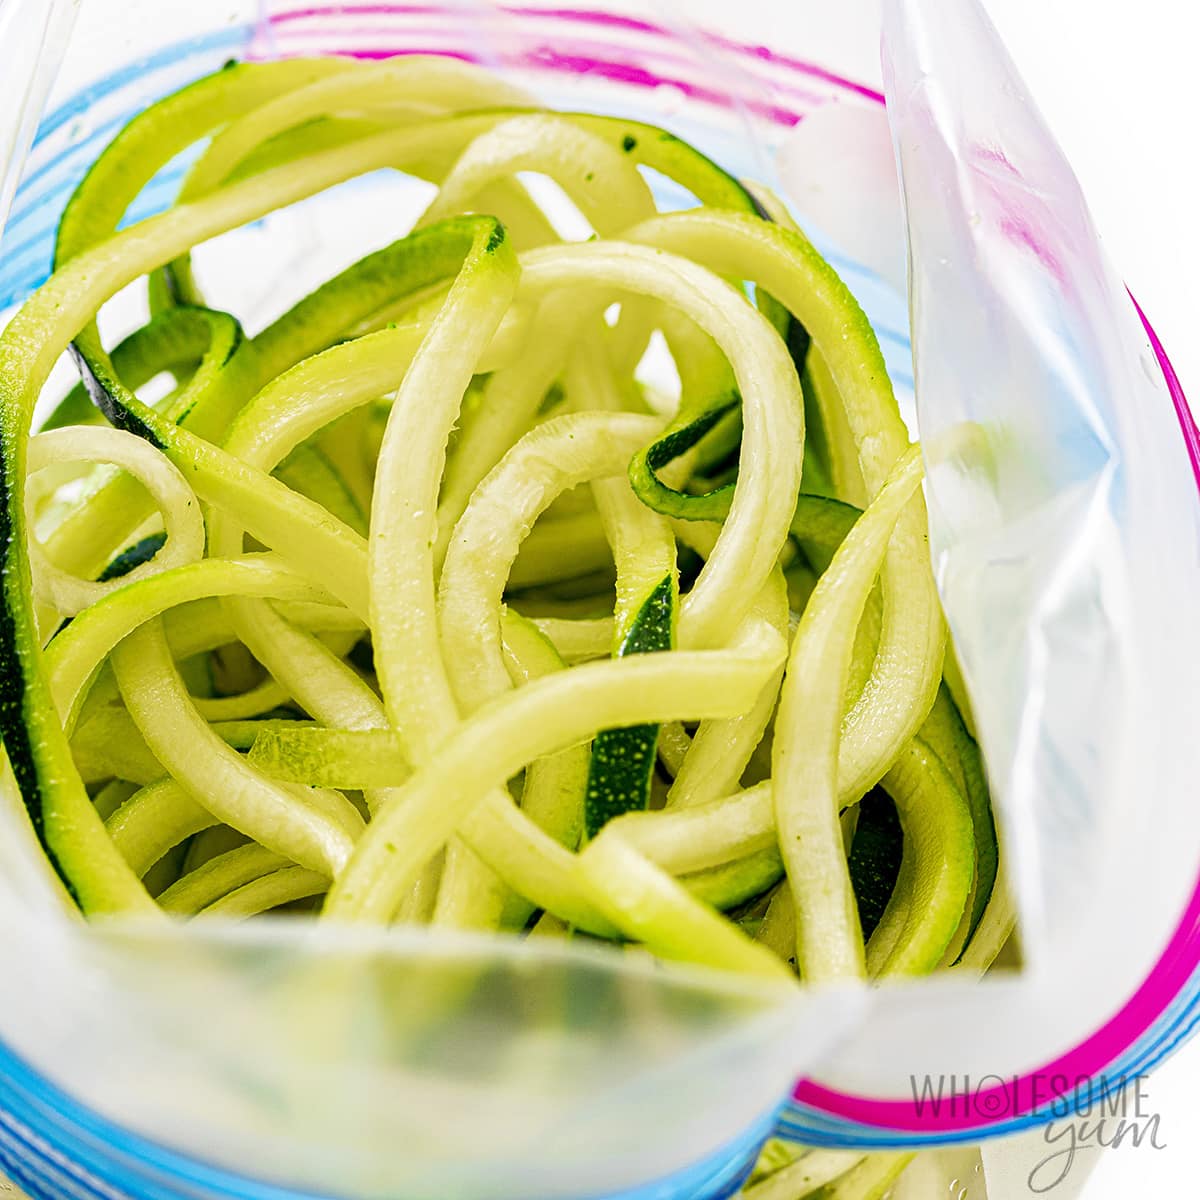 Zucchini noodles in a zip lock bag.